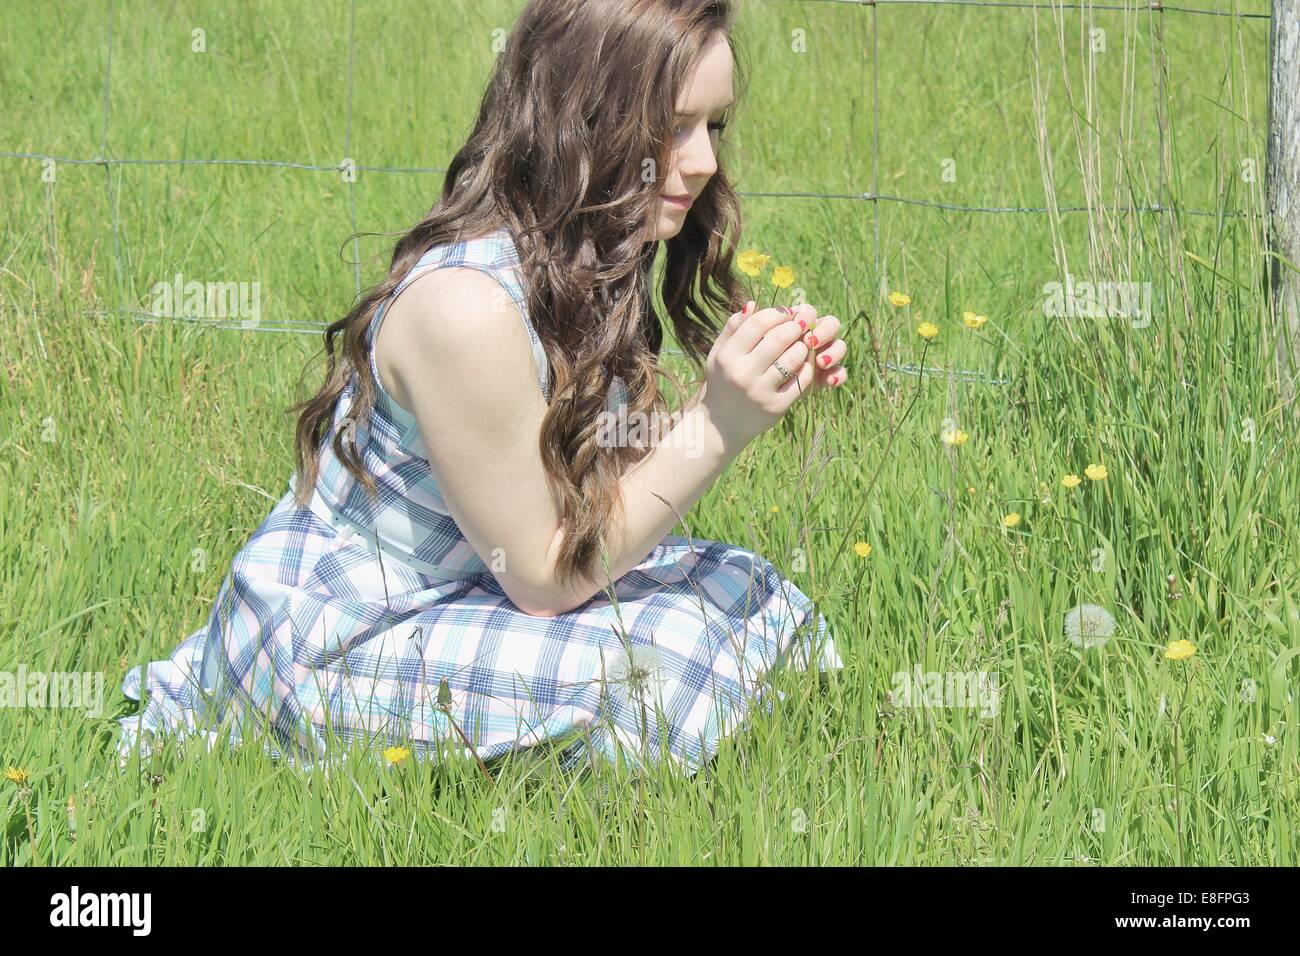 Adolescente sentado en una pradera la recolección de flores Foto de stock